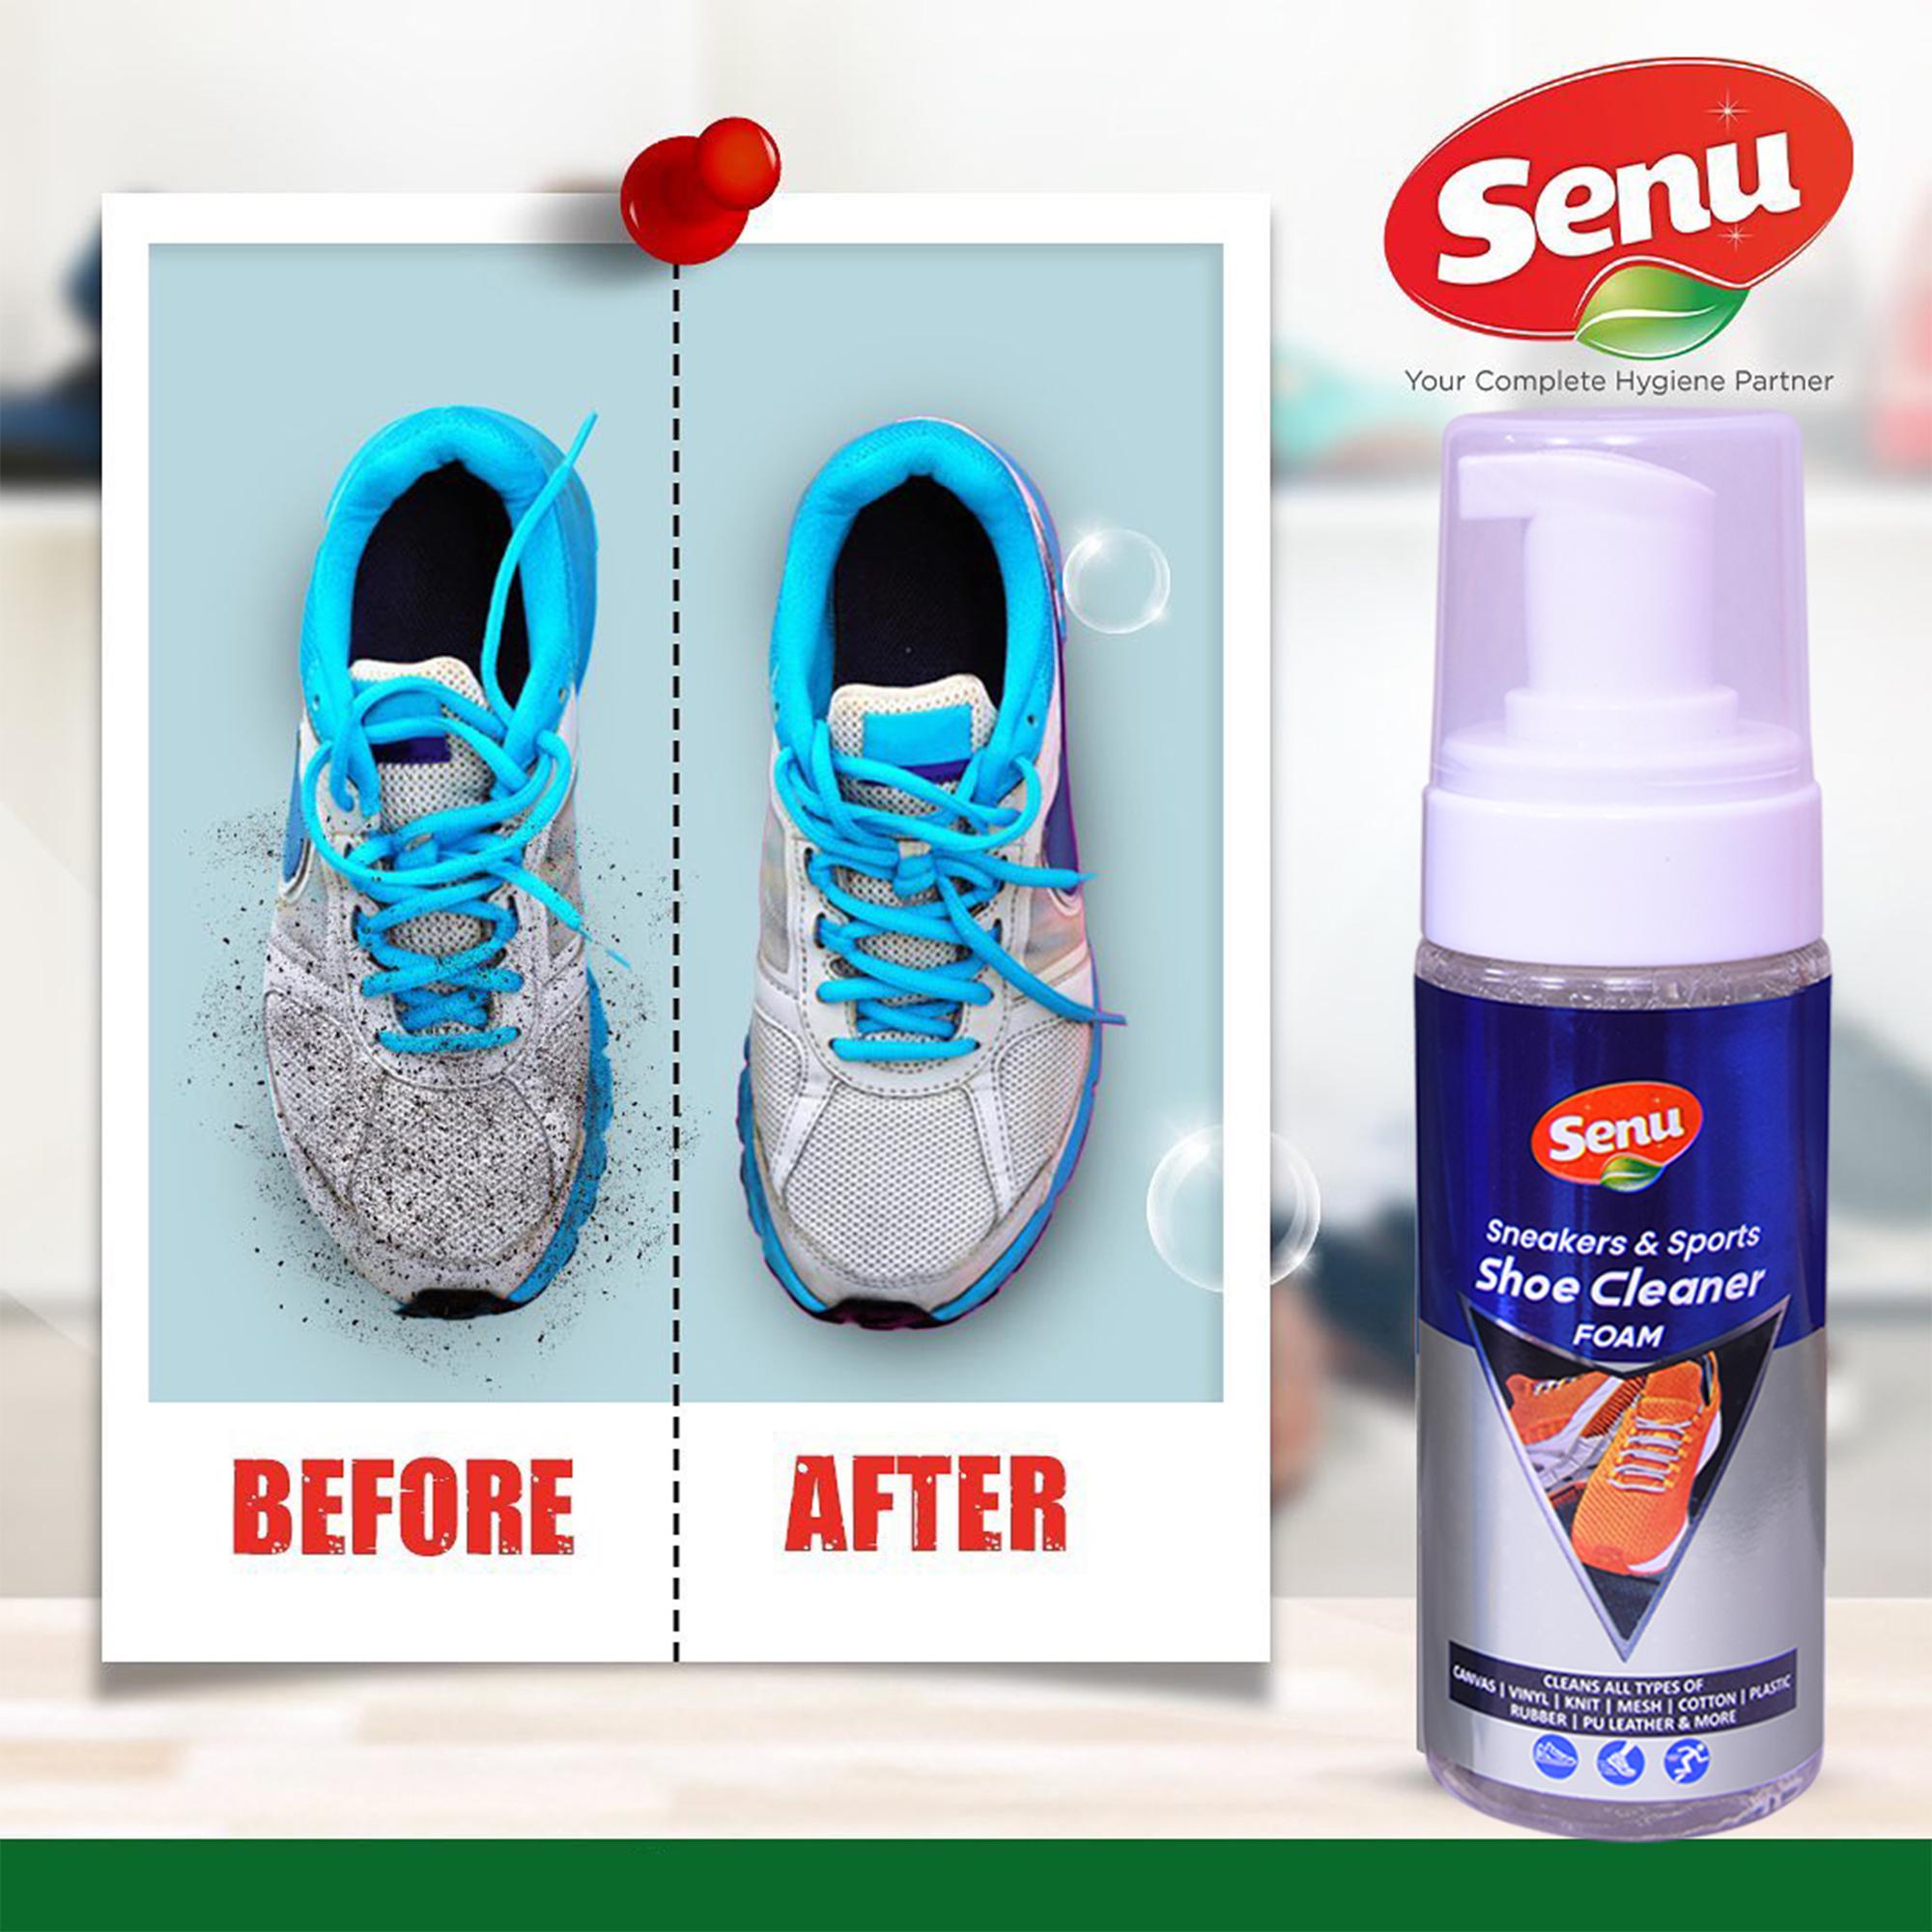 Buy Senu Sneaker & Sports Shoe Cleaner Foam Online at Best Price of Rs 239  - bigbasket